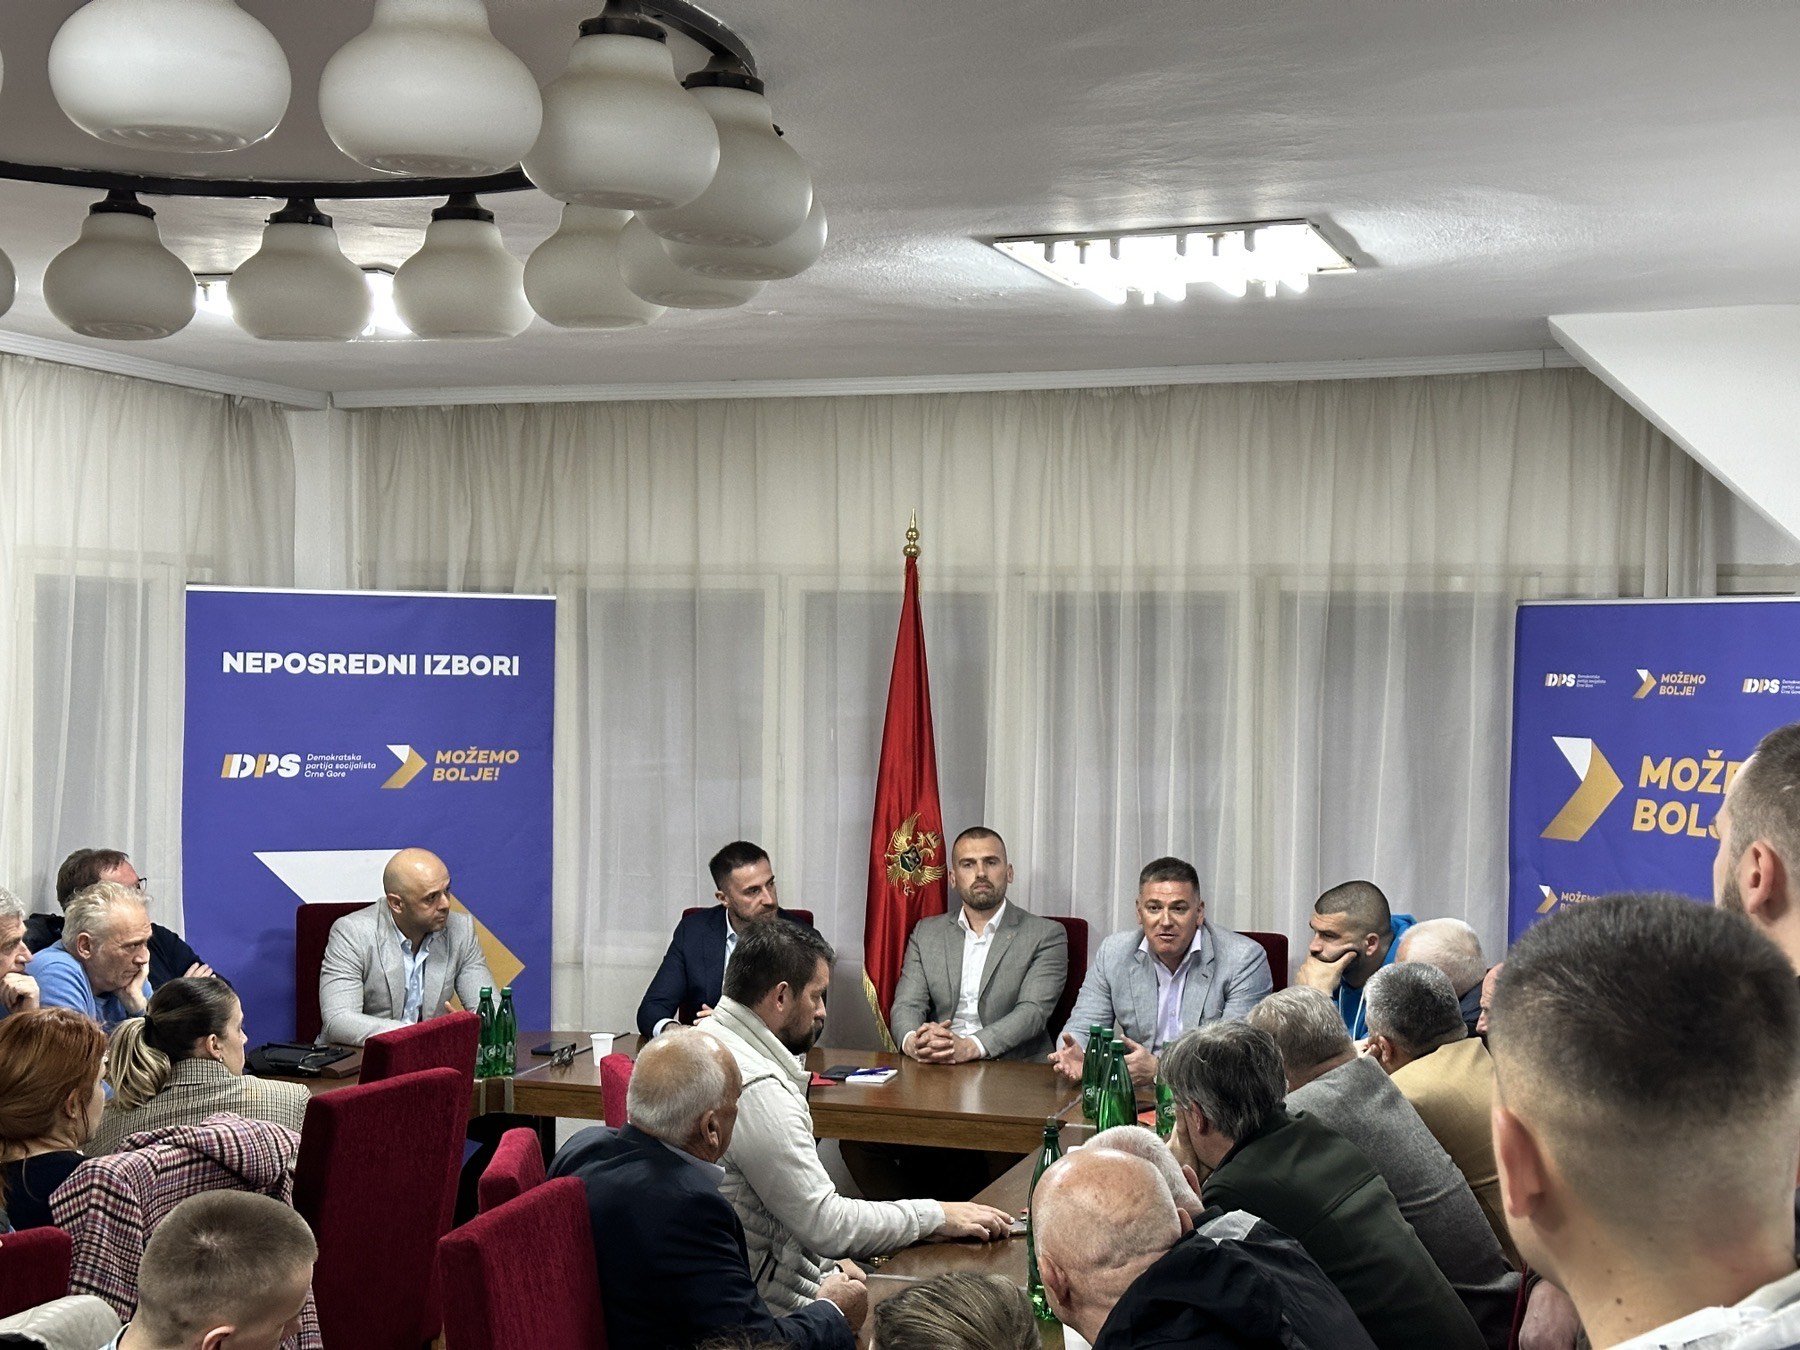 Tribina u Mojkovcu: DPS nastavlja sa intenzivnim strukturnim i kadrovskim reformama, kao najjača partija imamo obavezu da uspostavljamo demokratske standarde